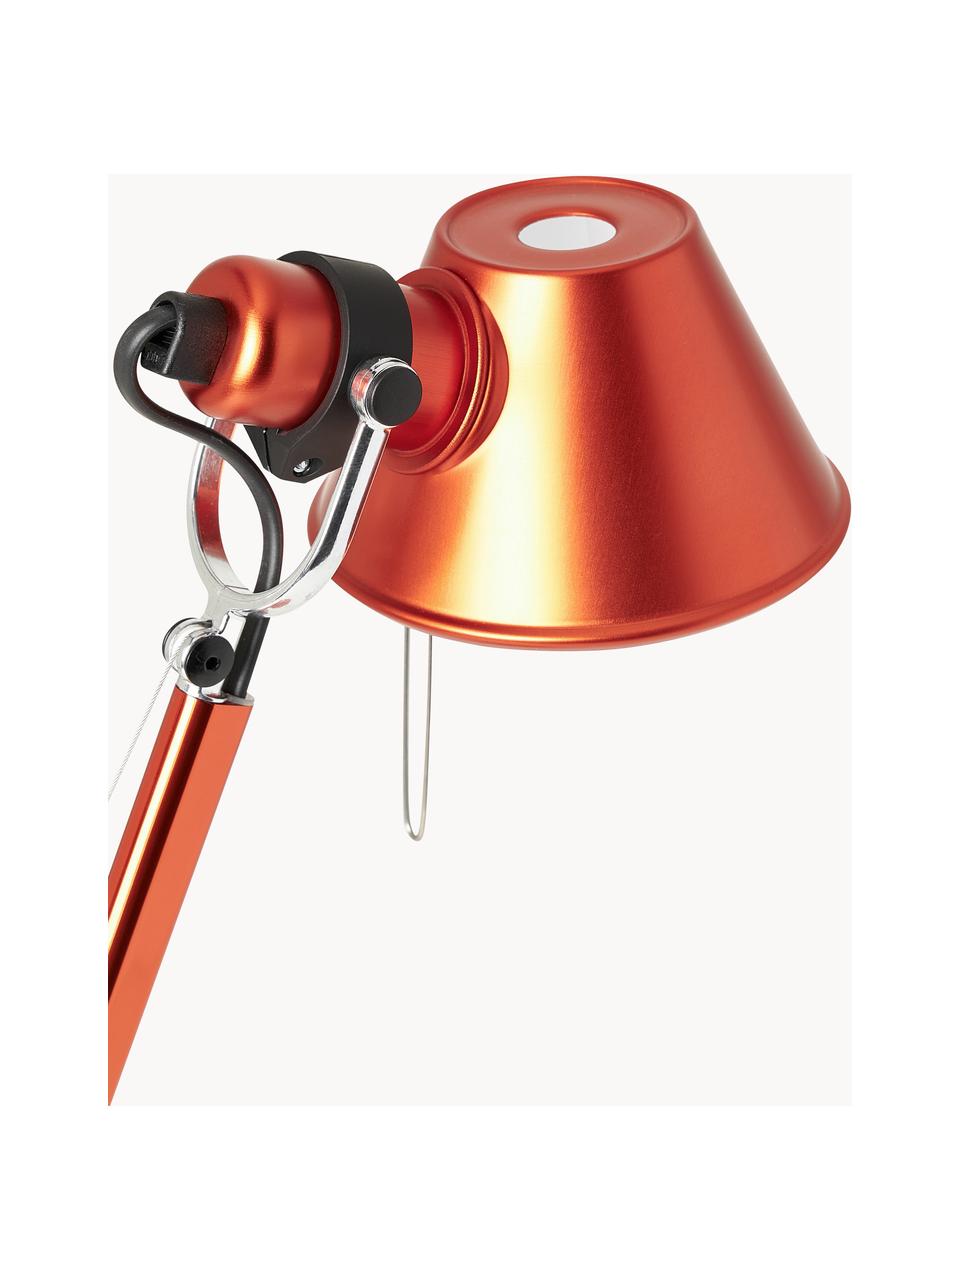 Verstellbare Schreibtischlampe Tolomeo Micro, Orange, B 45 x H 37 - 73 cm